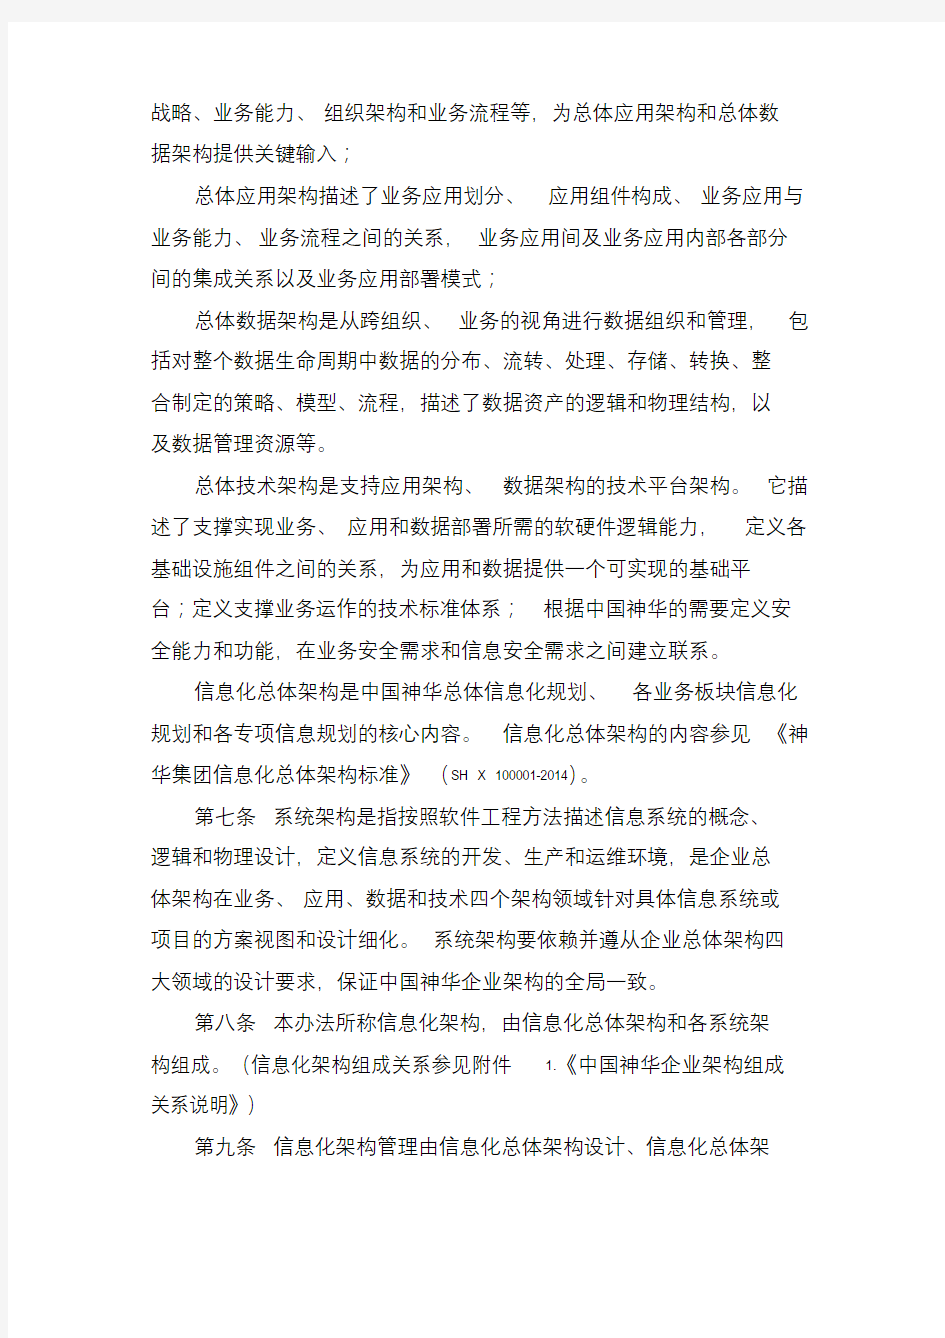 中国神华能源公司信息化架构管理办法